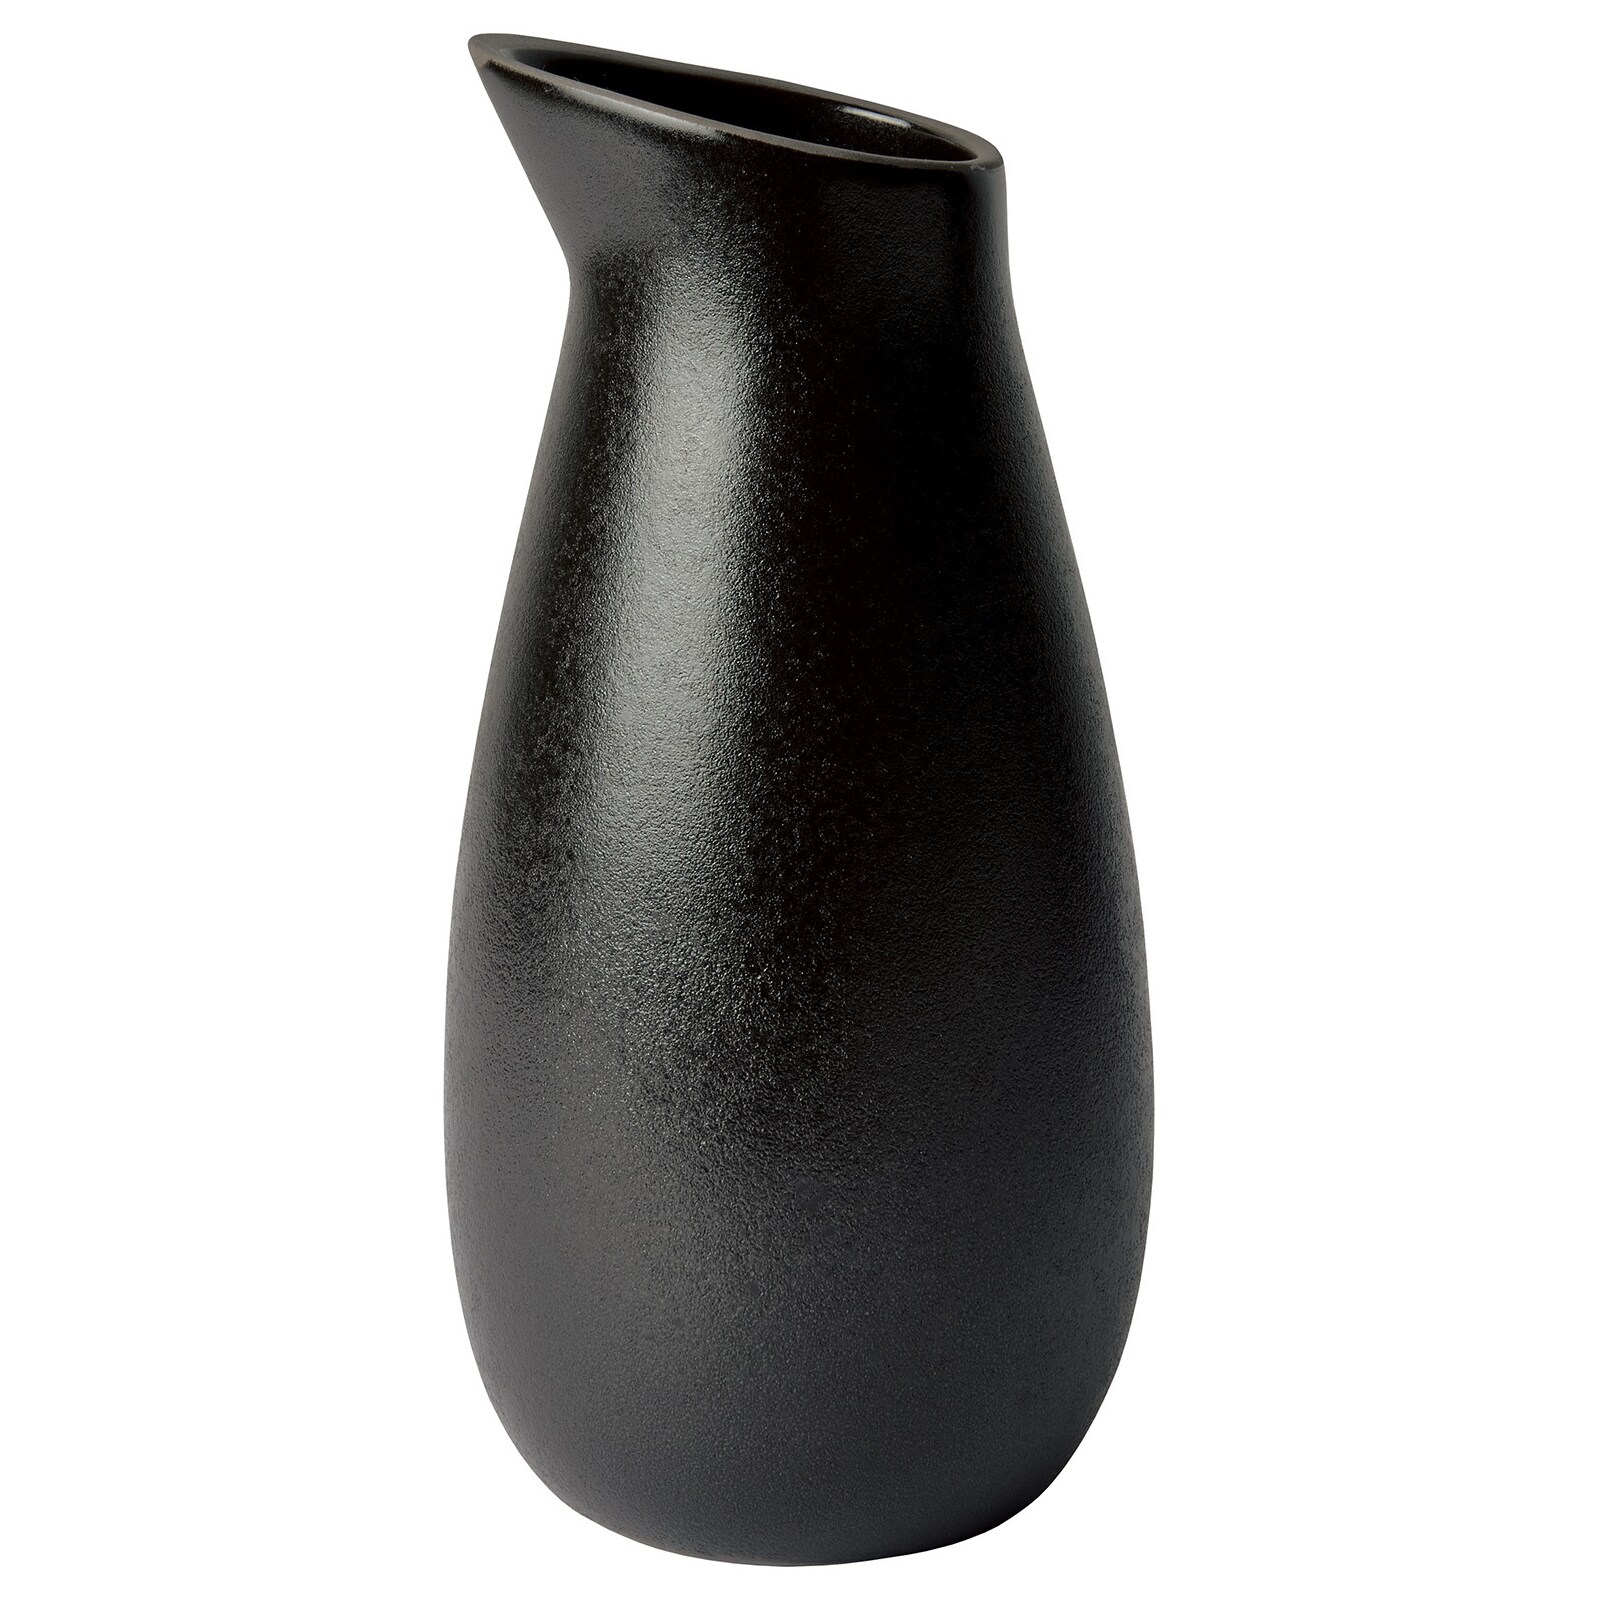 Raw Water Decanter 1,2 L, RoyalDesign Black - Titanium Aida 